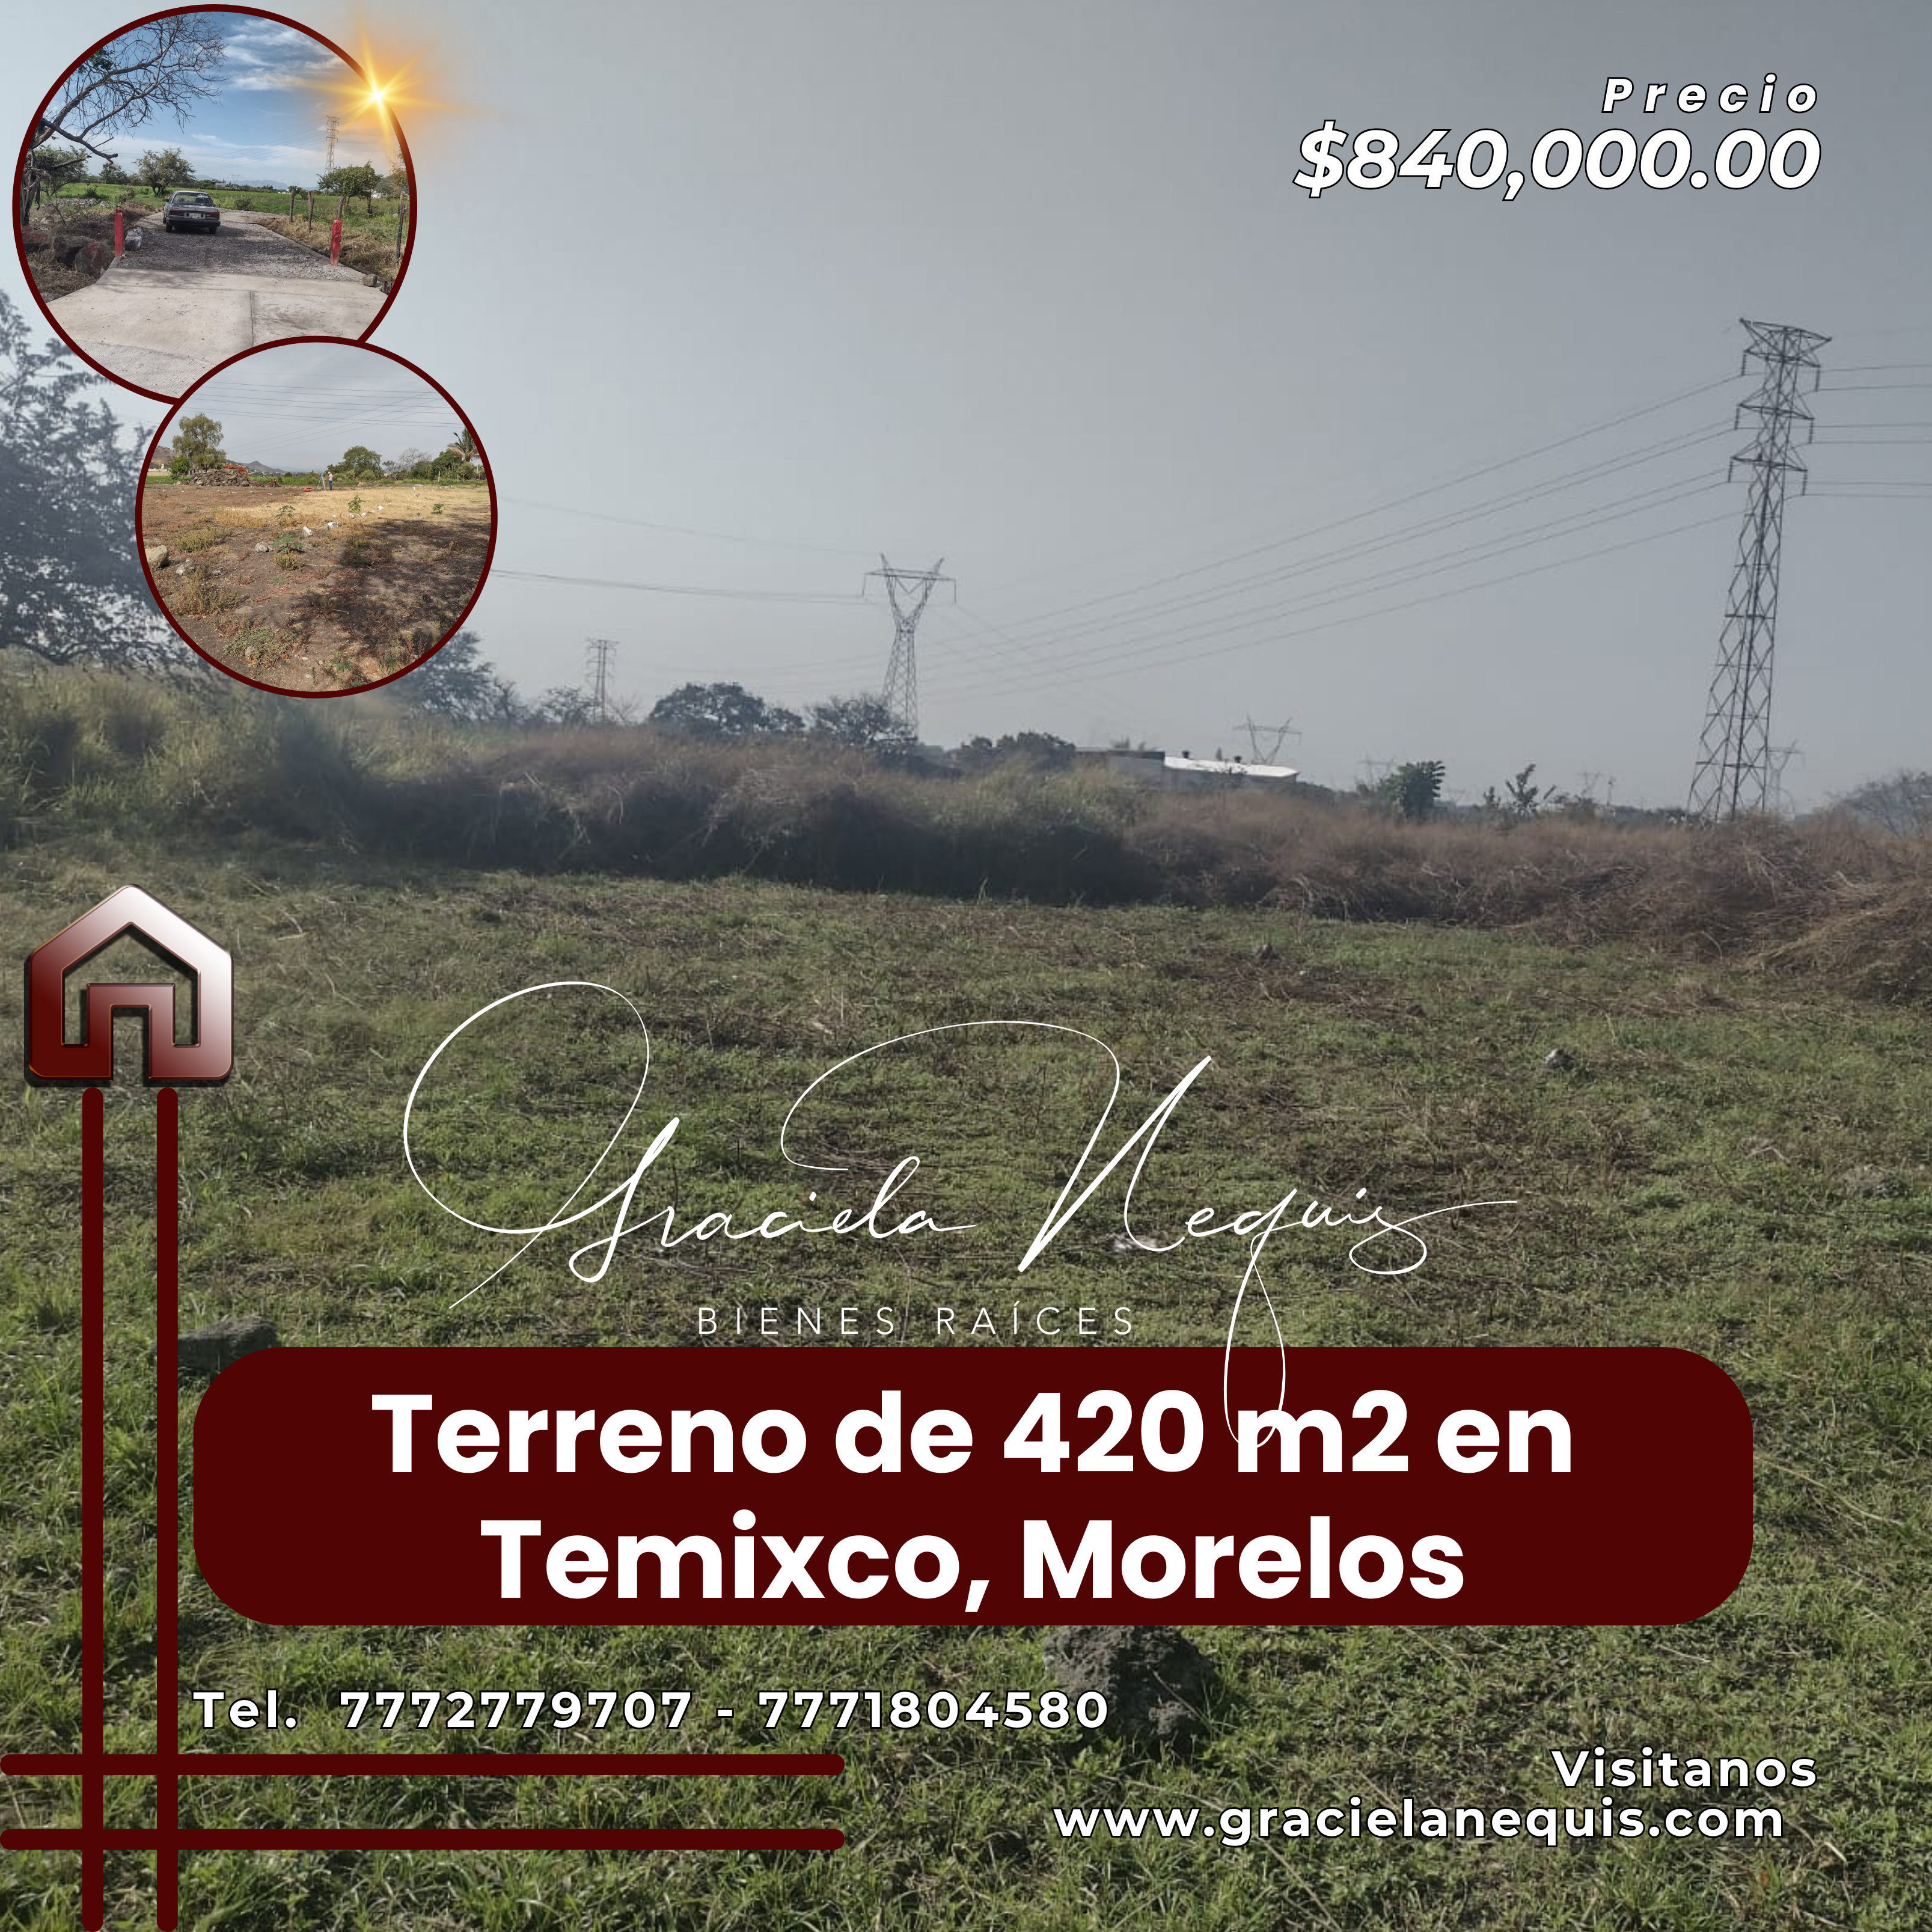 Terreno de 420 m2 ubicado en Temixco, Morelos. Cod. 210